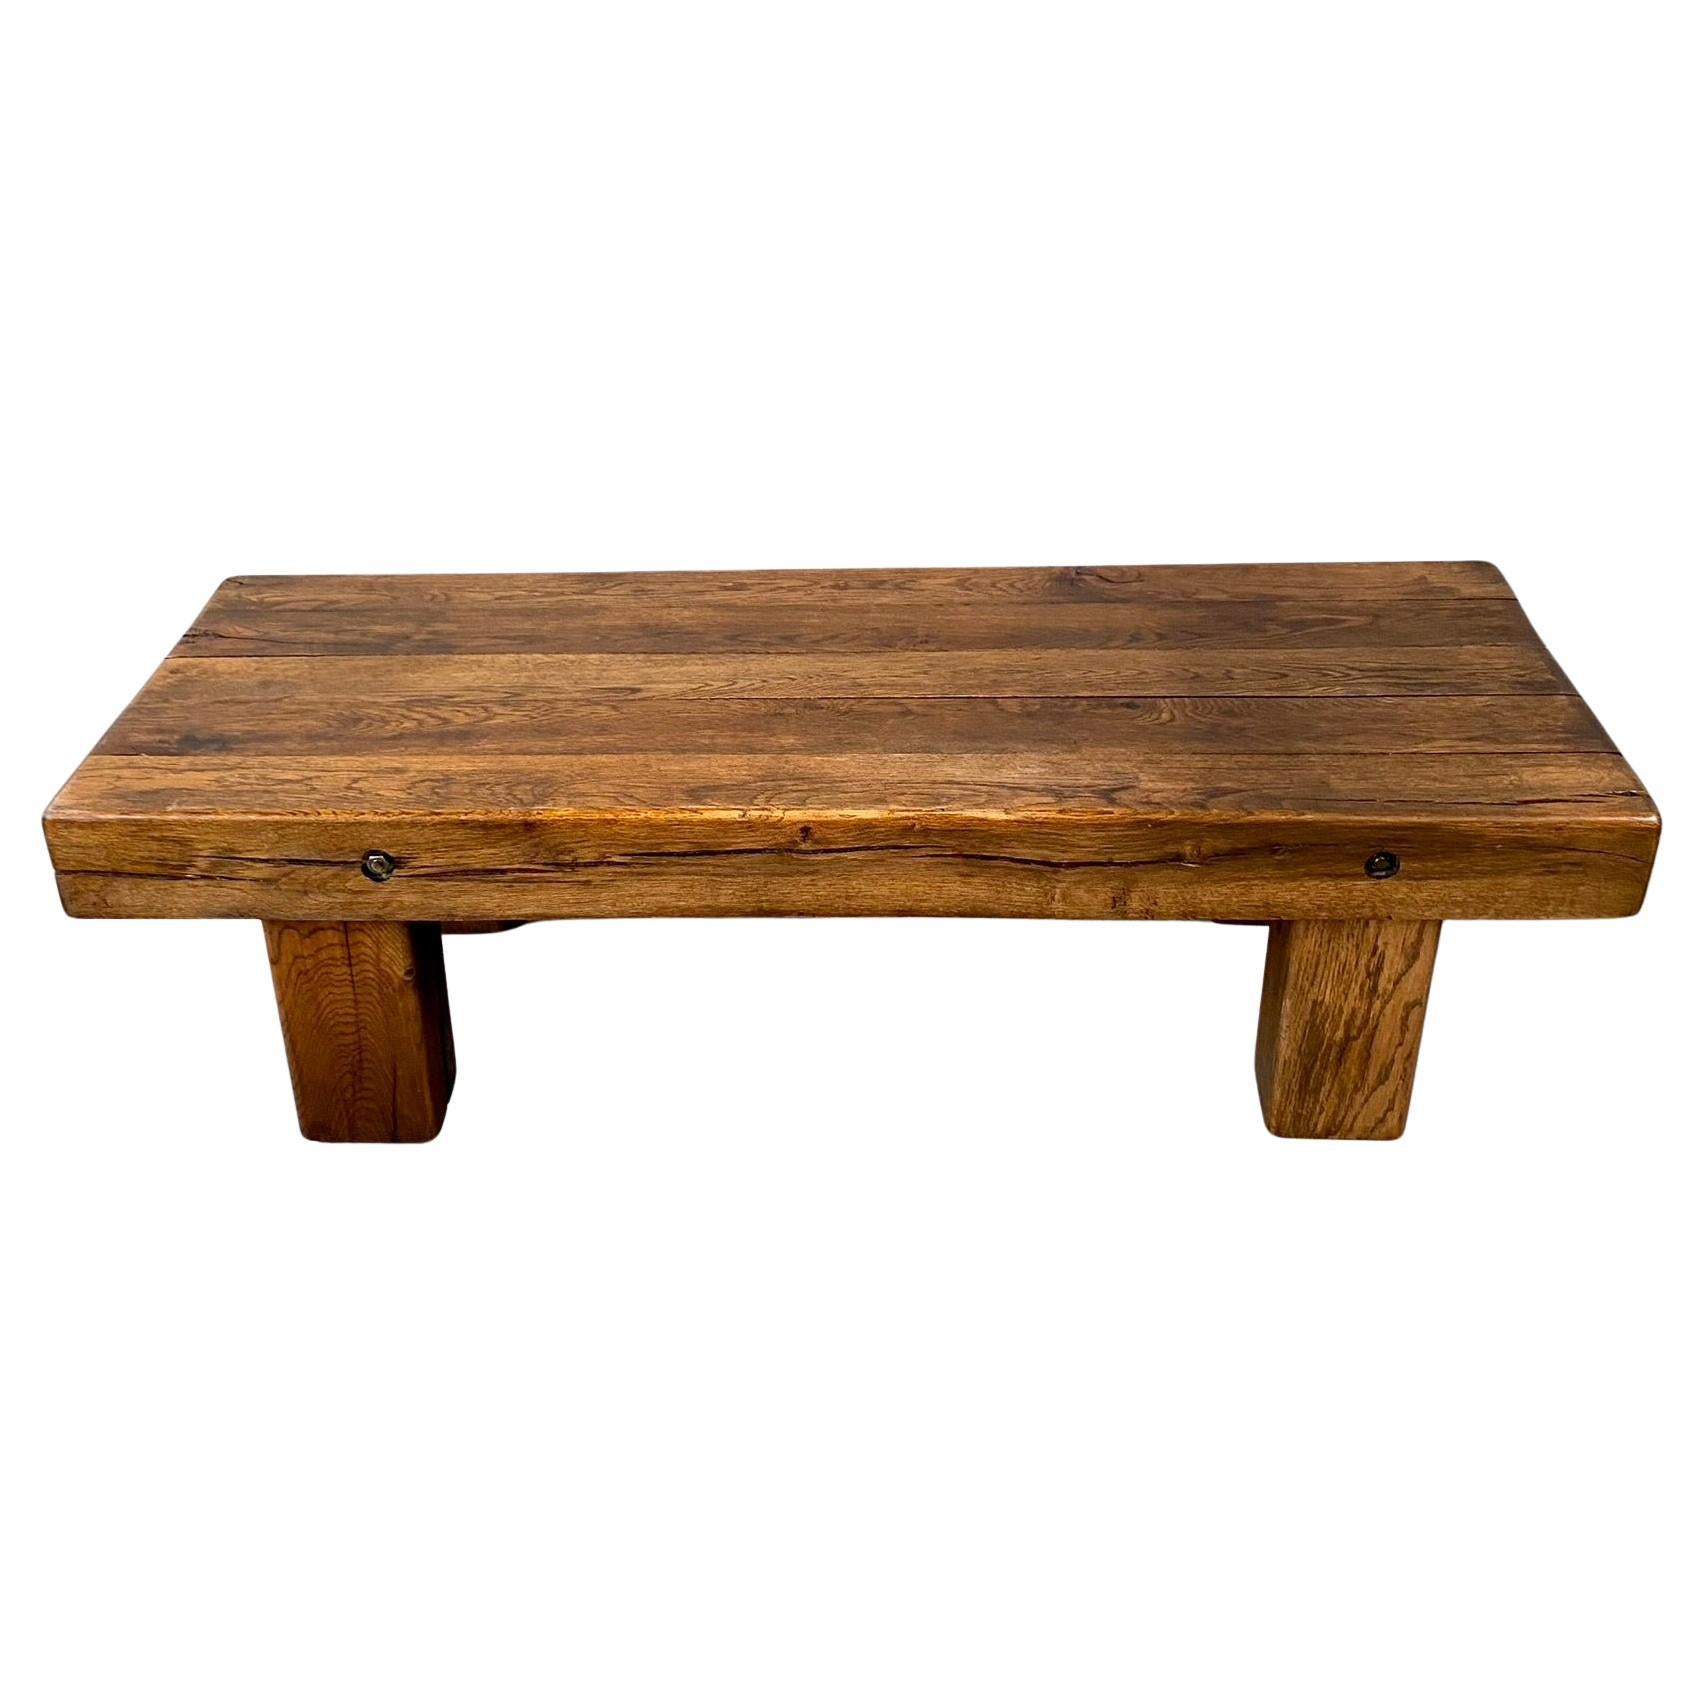 La table basse Wabi Sabi Brutalist en chêne massif est une pièce intemporelle originaire de la France des années 1960. Cette table exquise allie harmonieusement le charme rustique à une esthétique moderne, ce qui en fait un complément idéal pour les